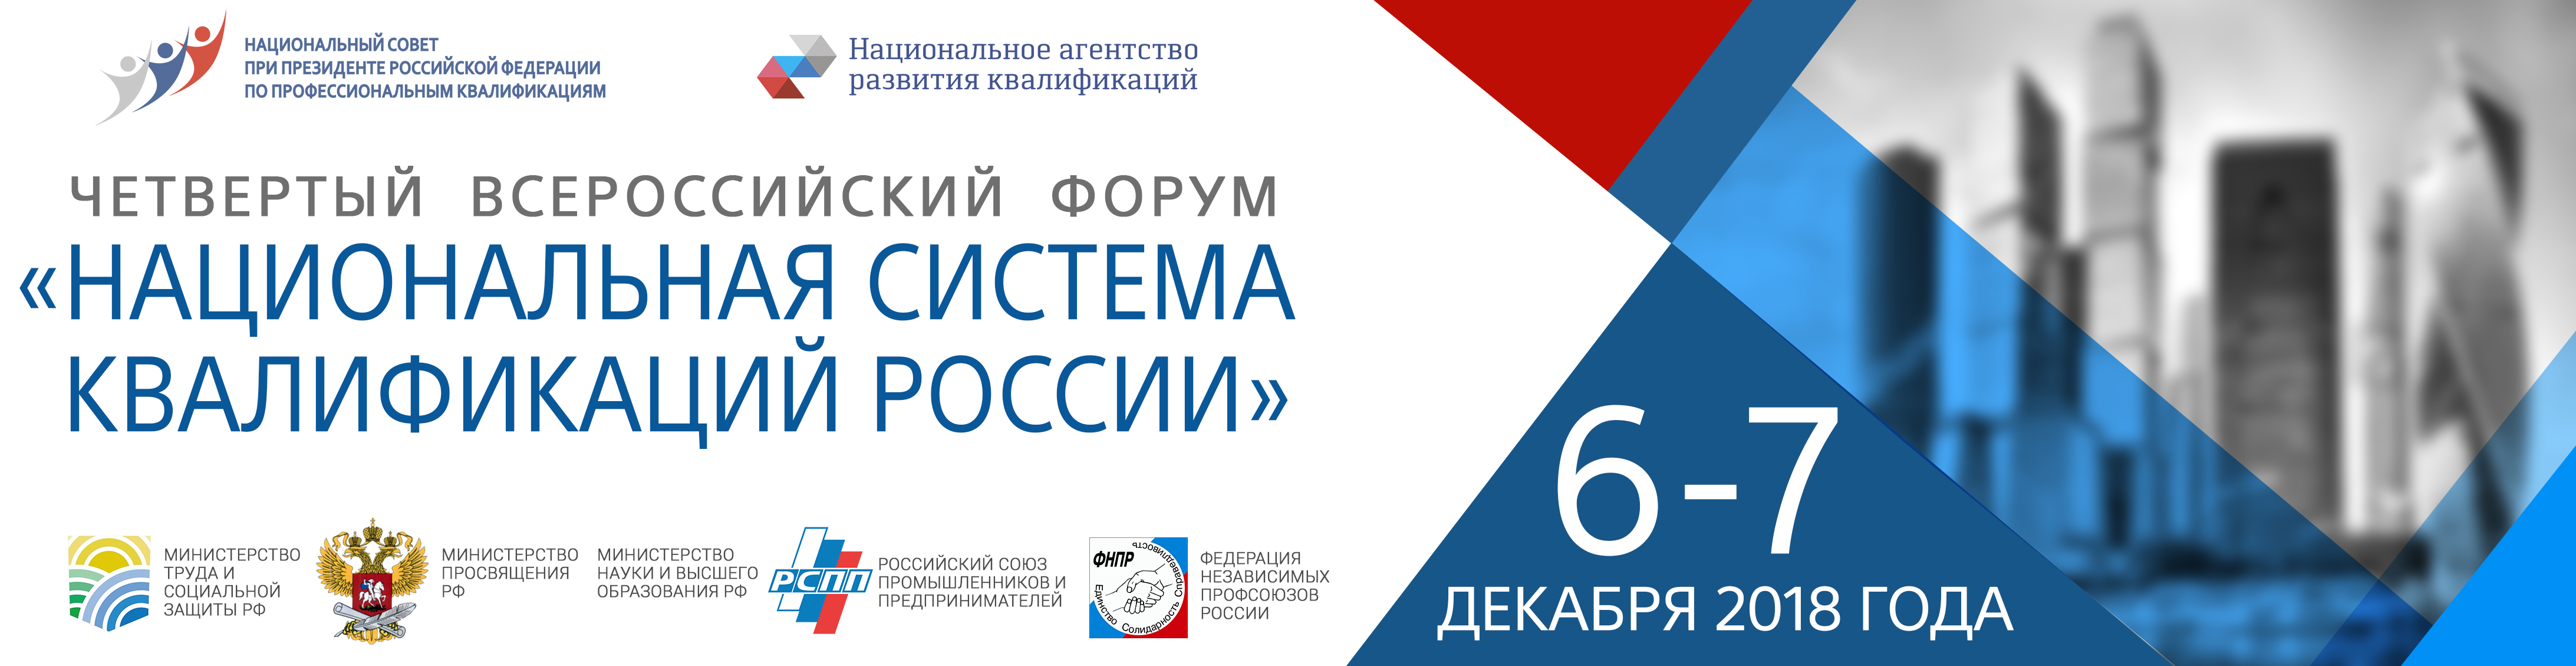 Началась регистрация участников на Четвертый Всероссийский Форум «Национальная система квалификаций России» - 6-7 декабря, г. Москва